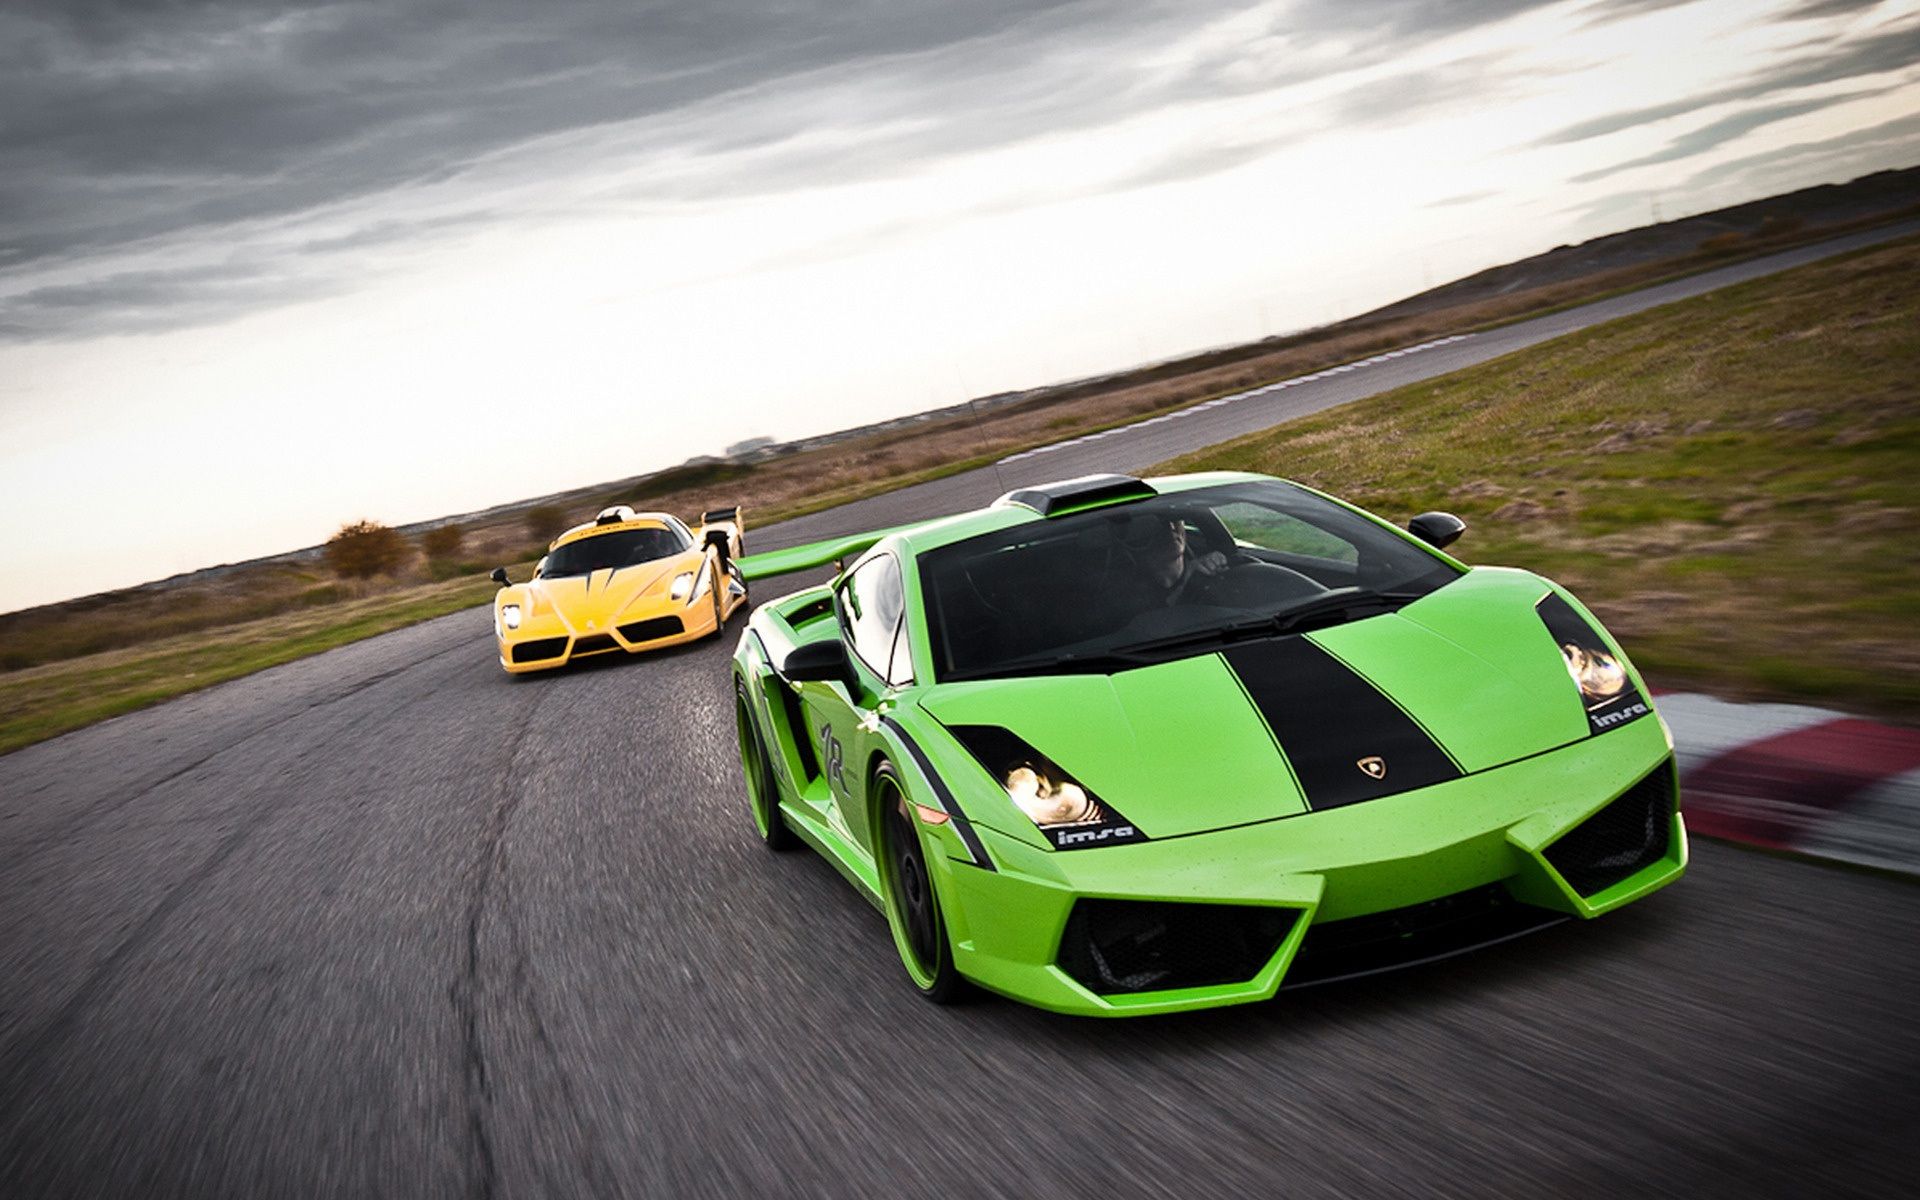 Lamborghini Green, windows, theme, car, nice wallpaper. Lamborghini Green, windows, theme, car, nice